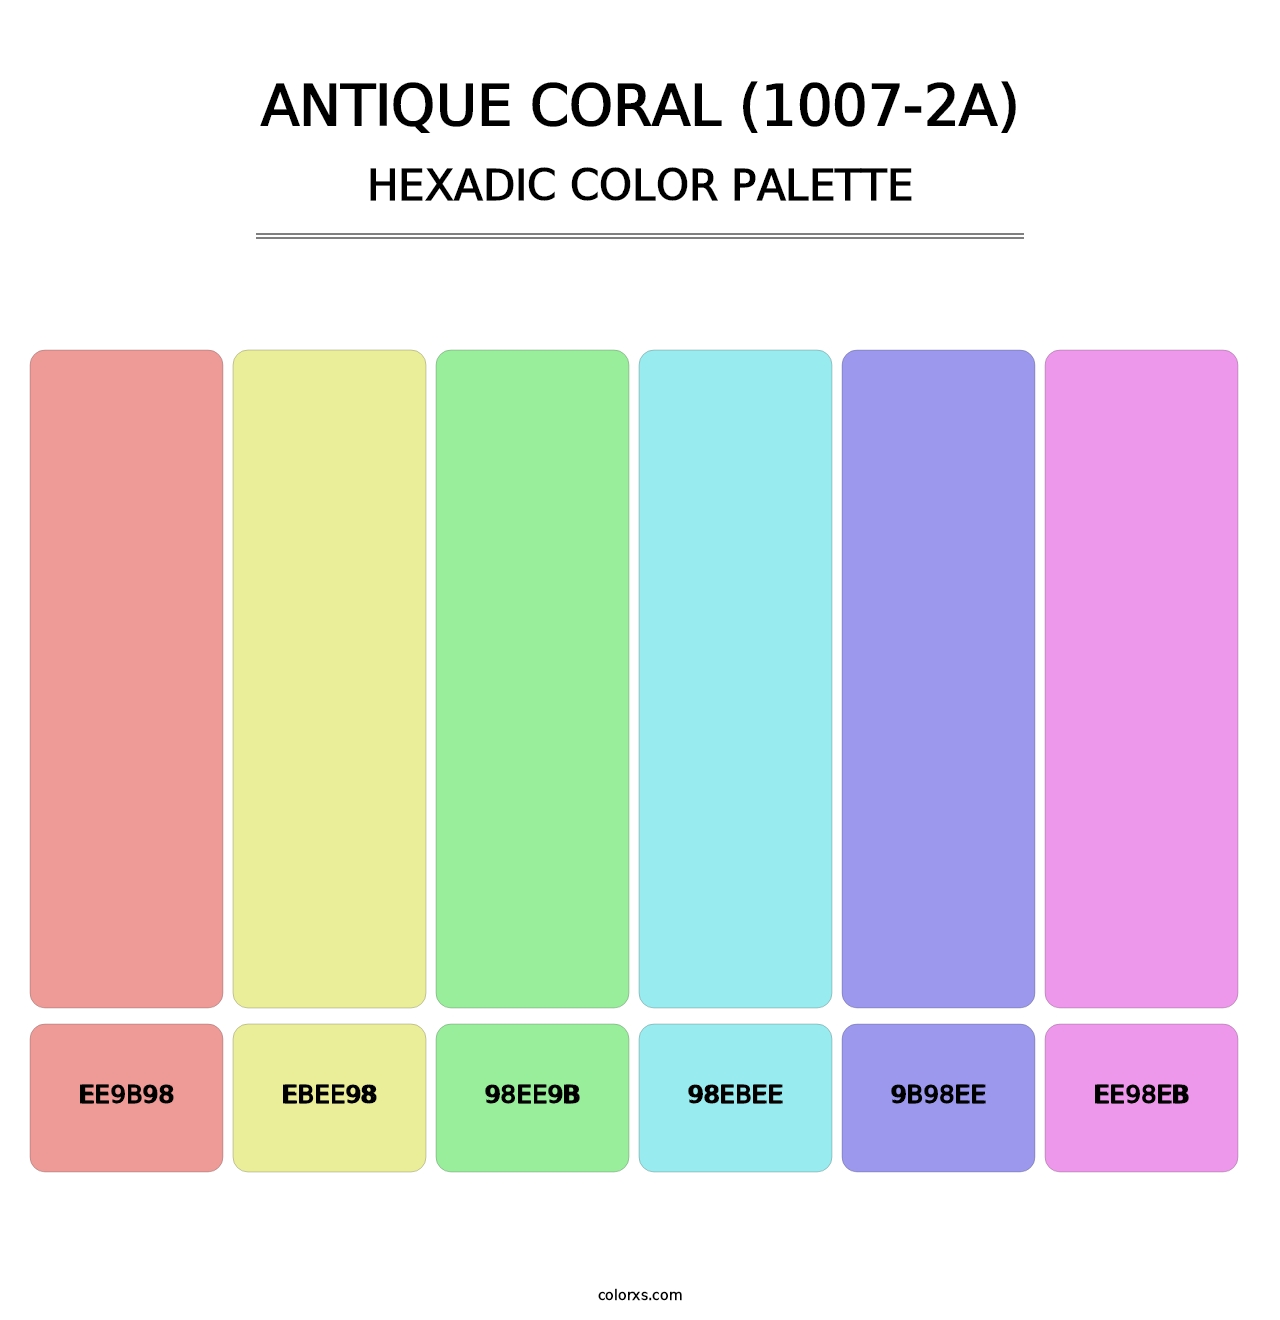 Antique Coral (1007-2A) - Hexadic Color Palette